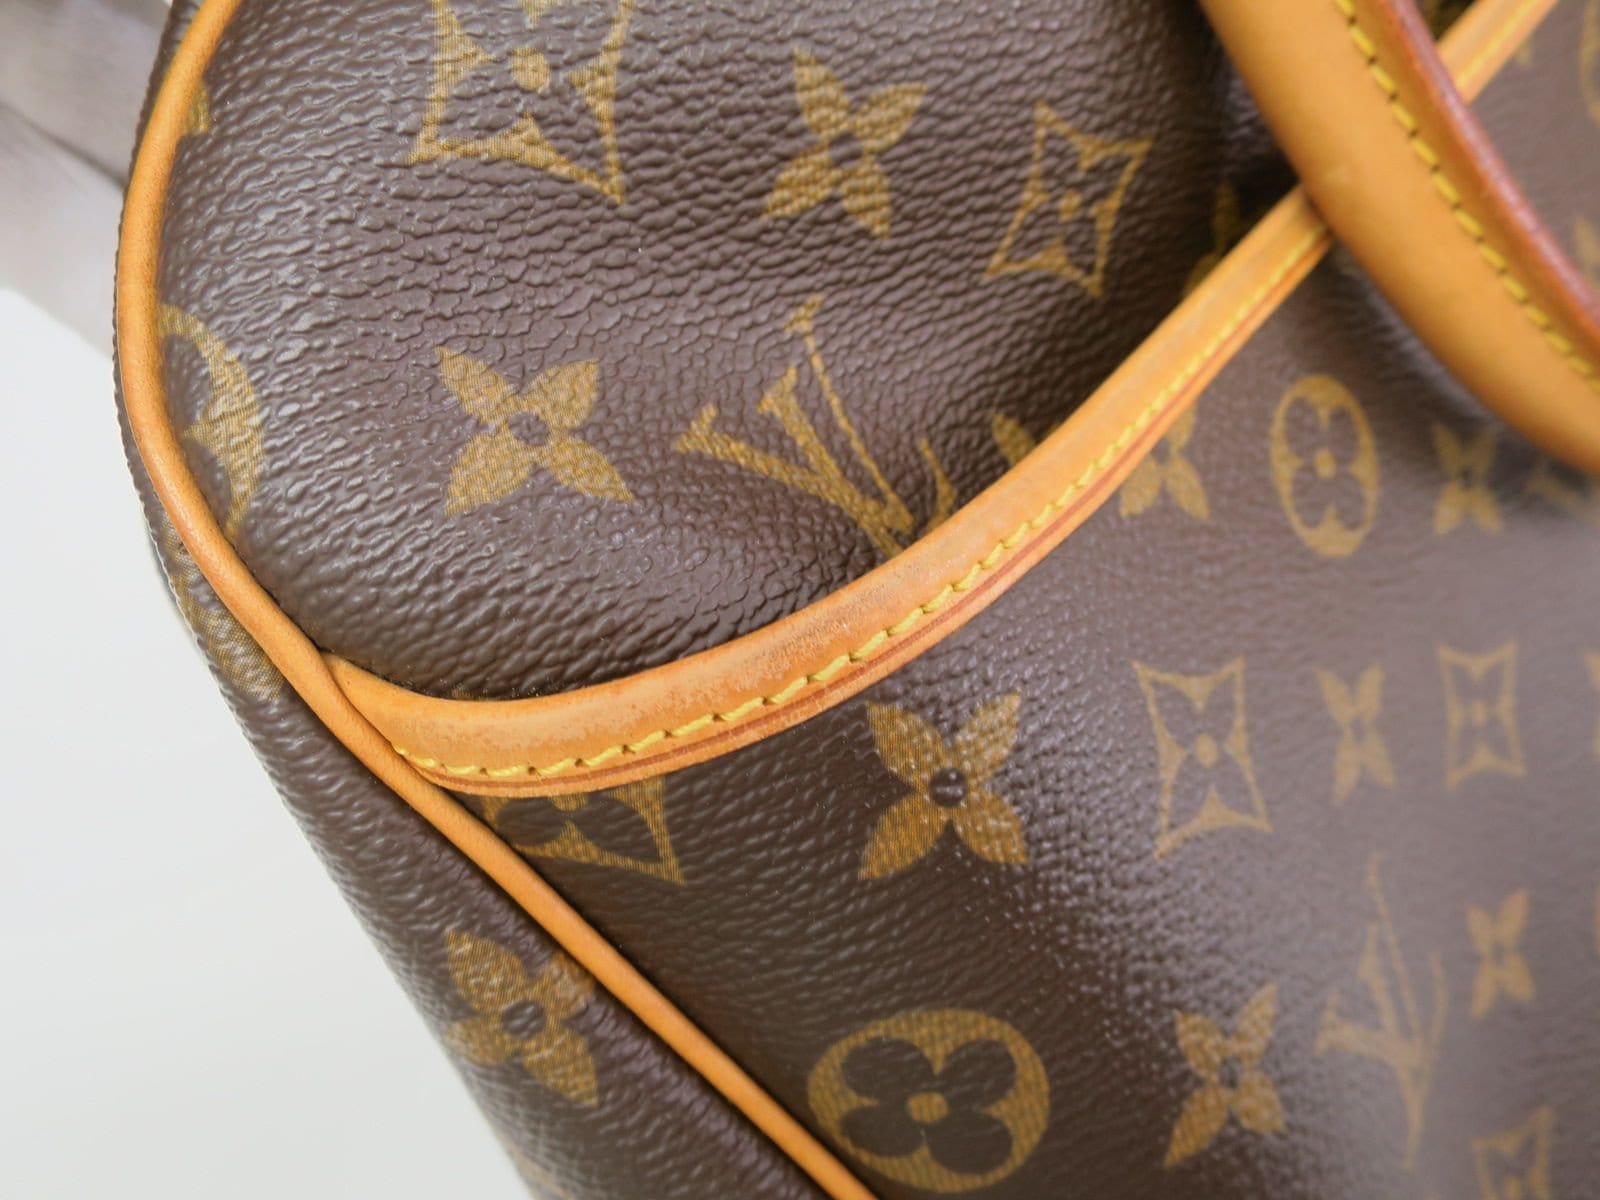 Louis Vuitton, Bags, Authentic Louis Vuitton Bowling Vanity Bag Monogram